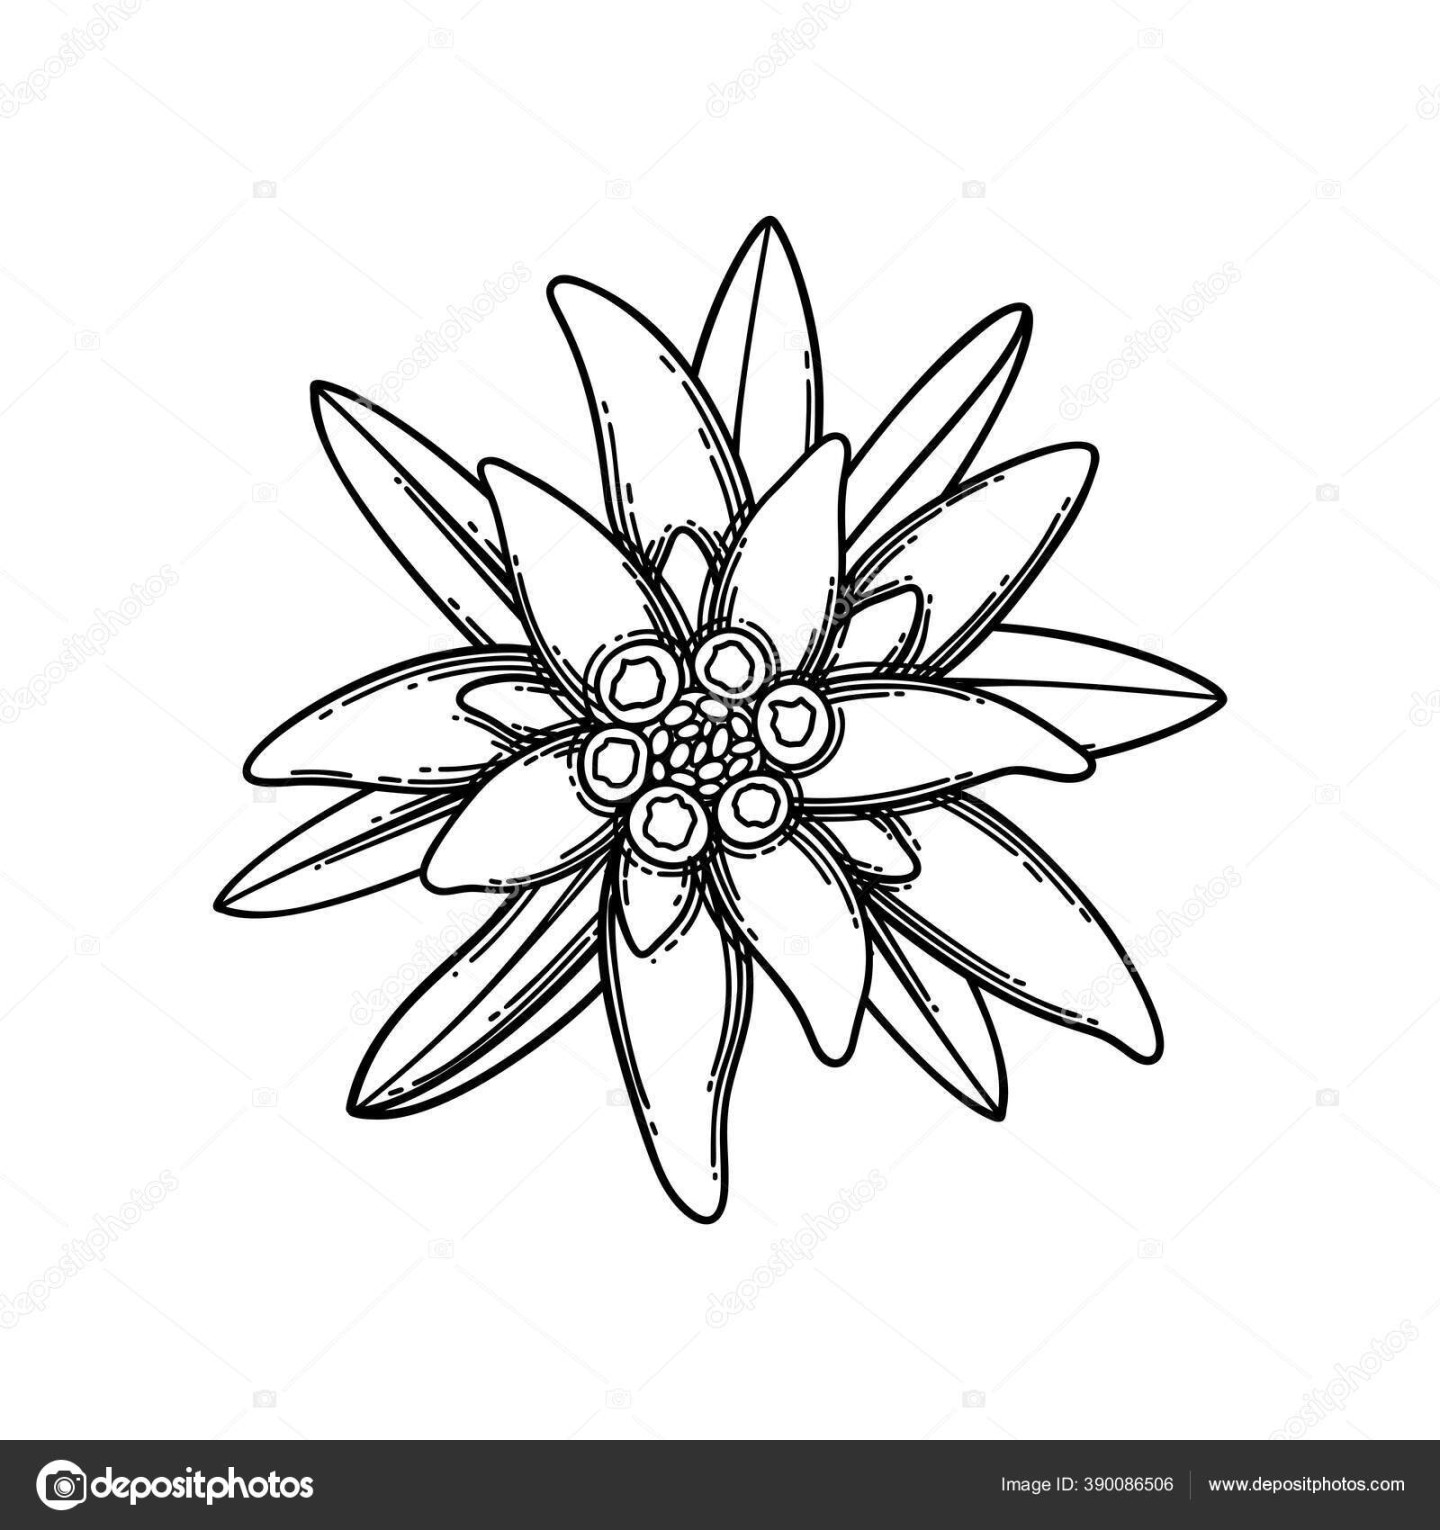 Vignet grafis yang terbuat dari bunga dan daun edelweiss